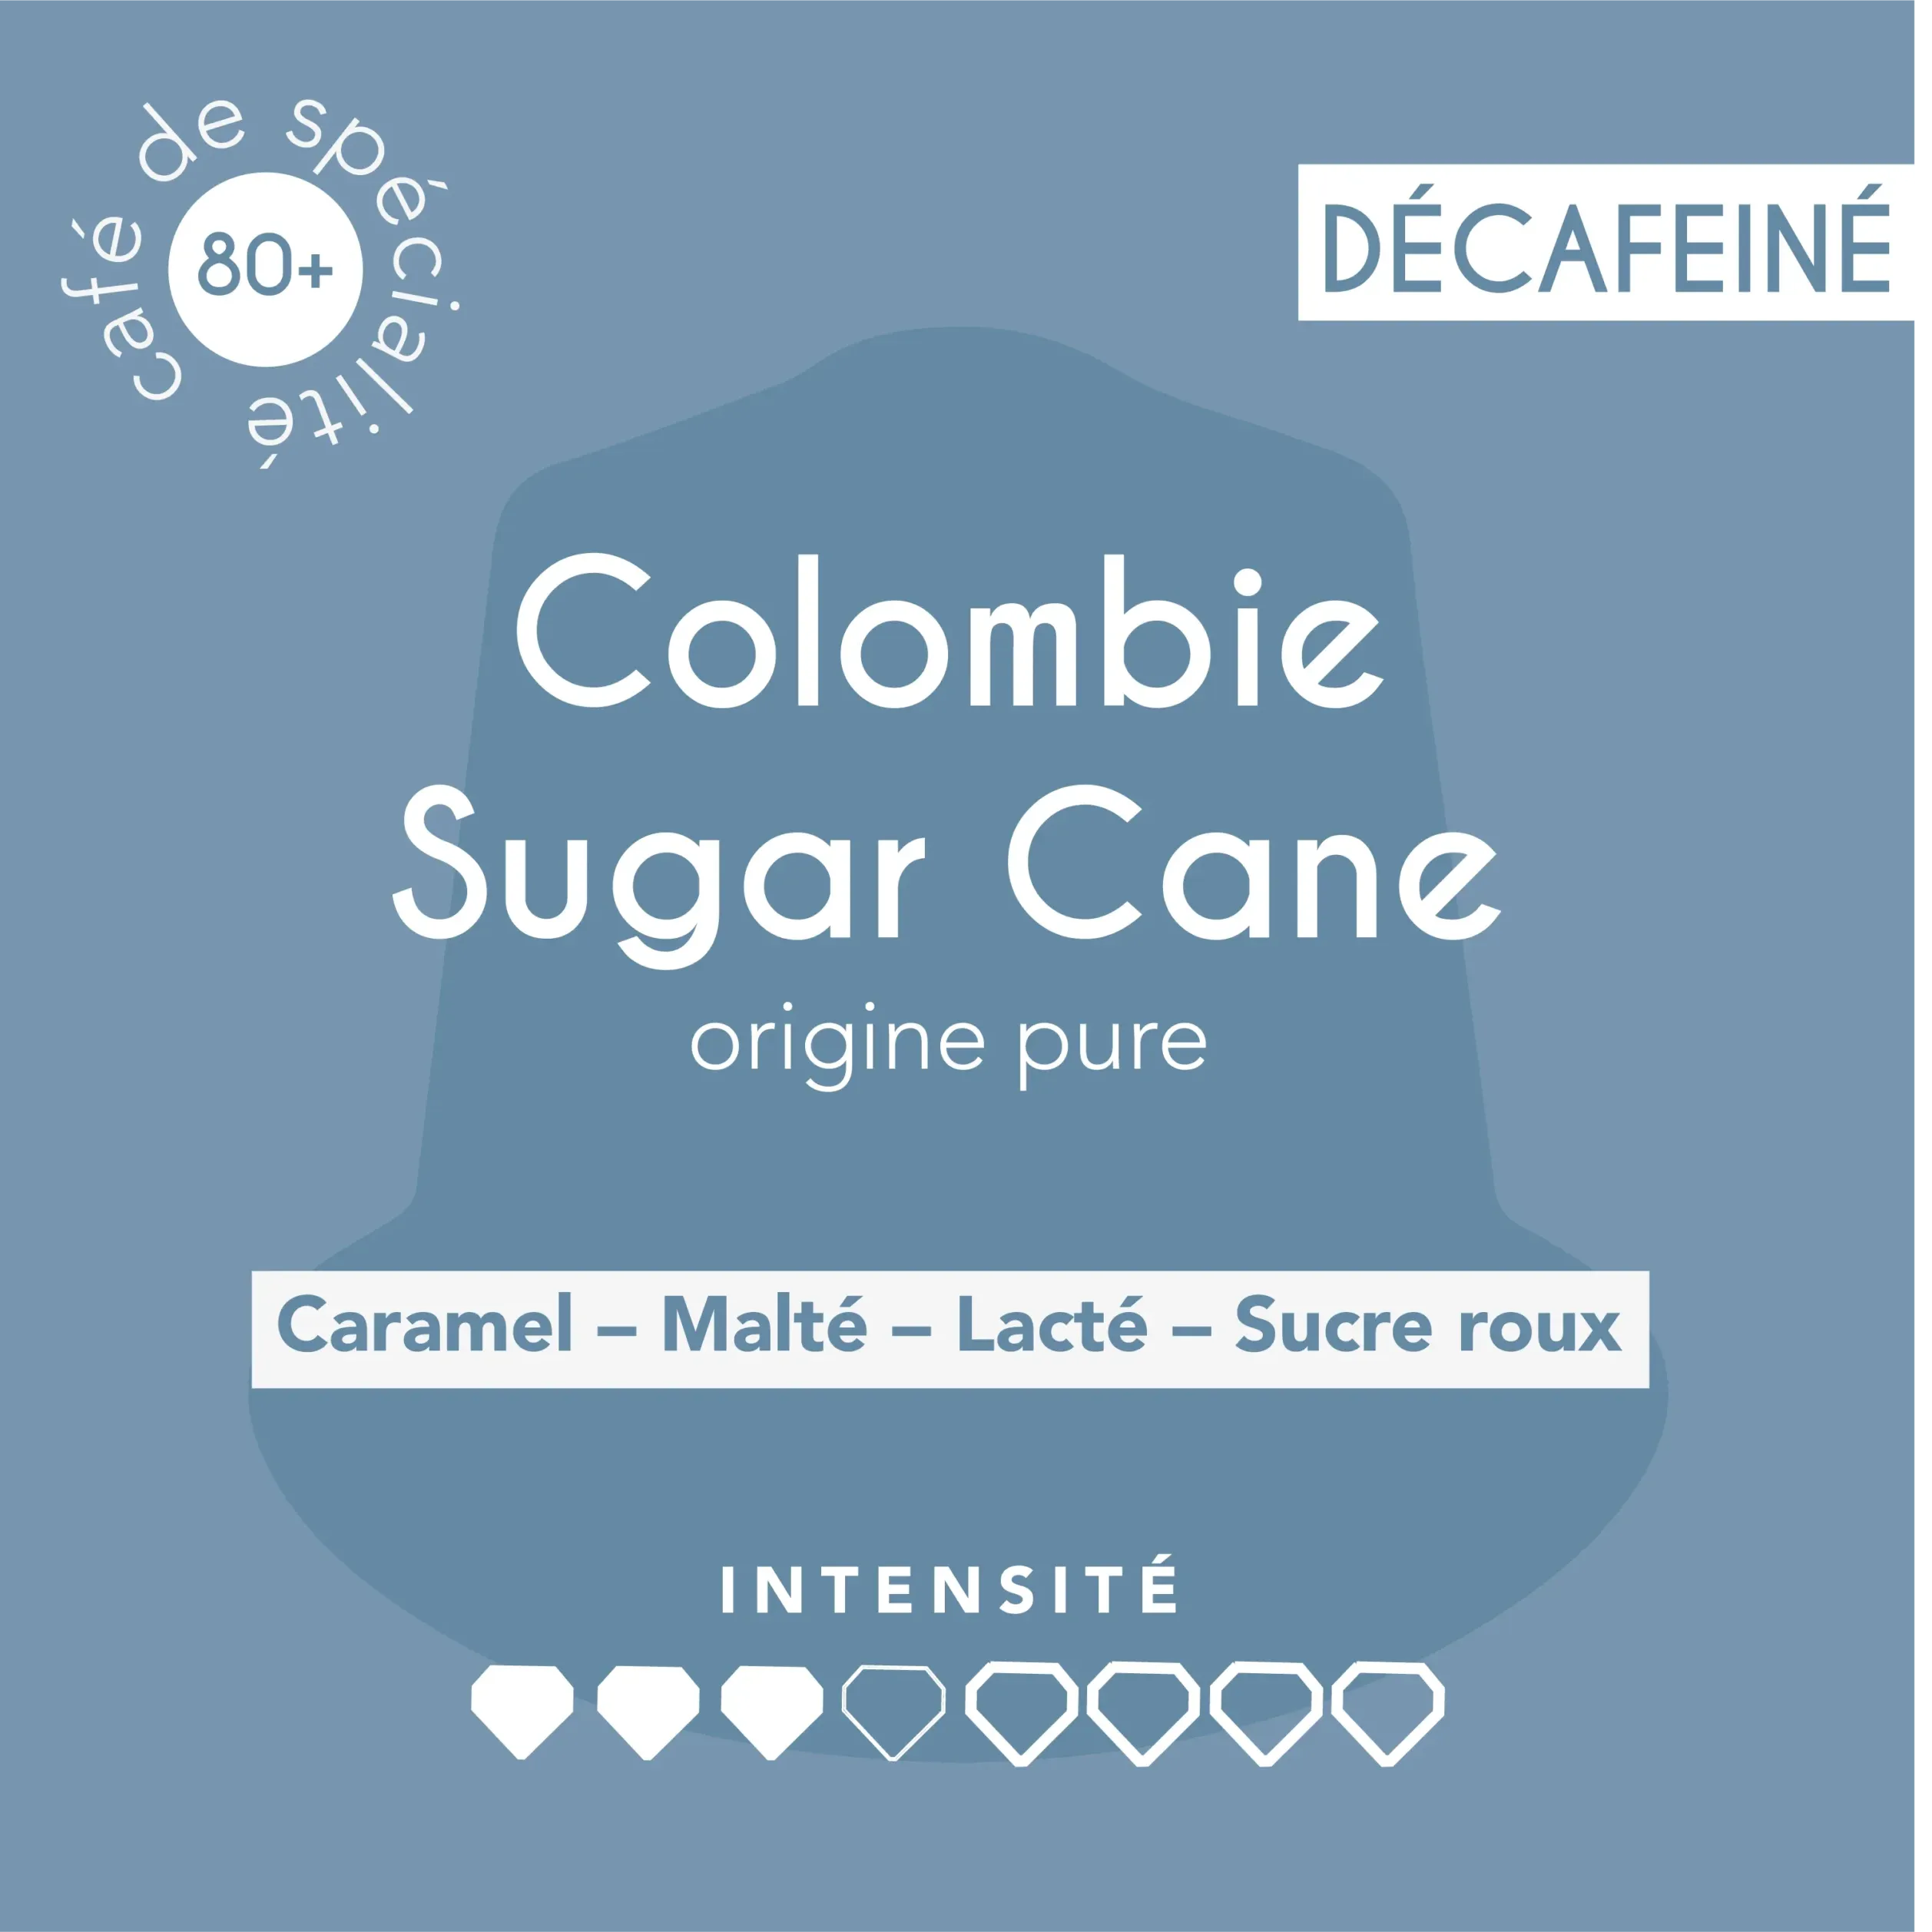 Capsule de décaféiné-Colombie Sugar Cane